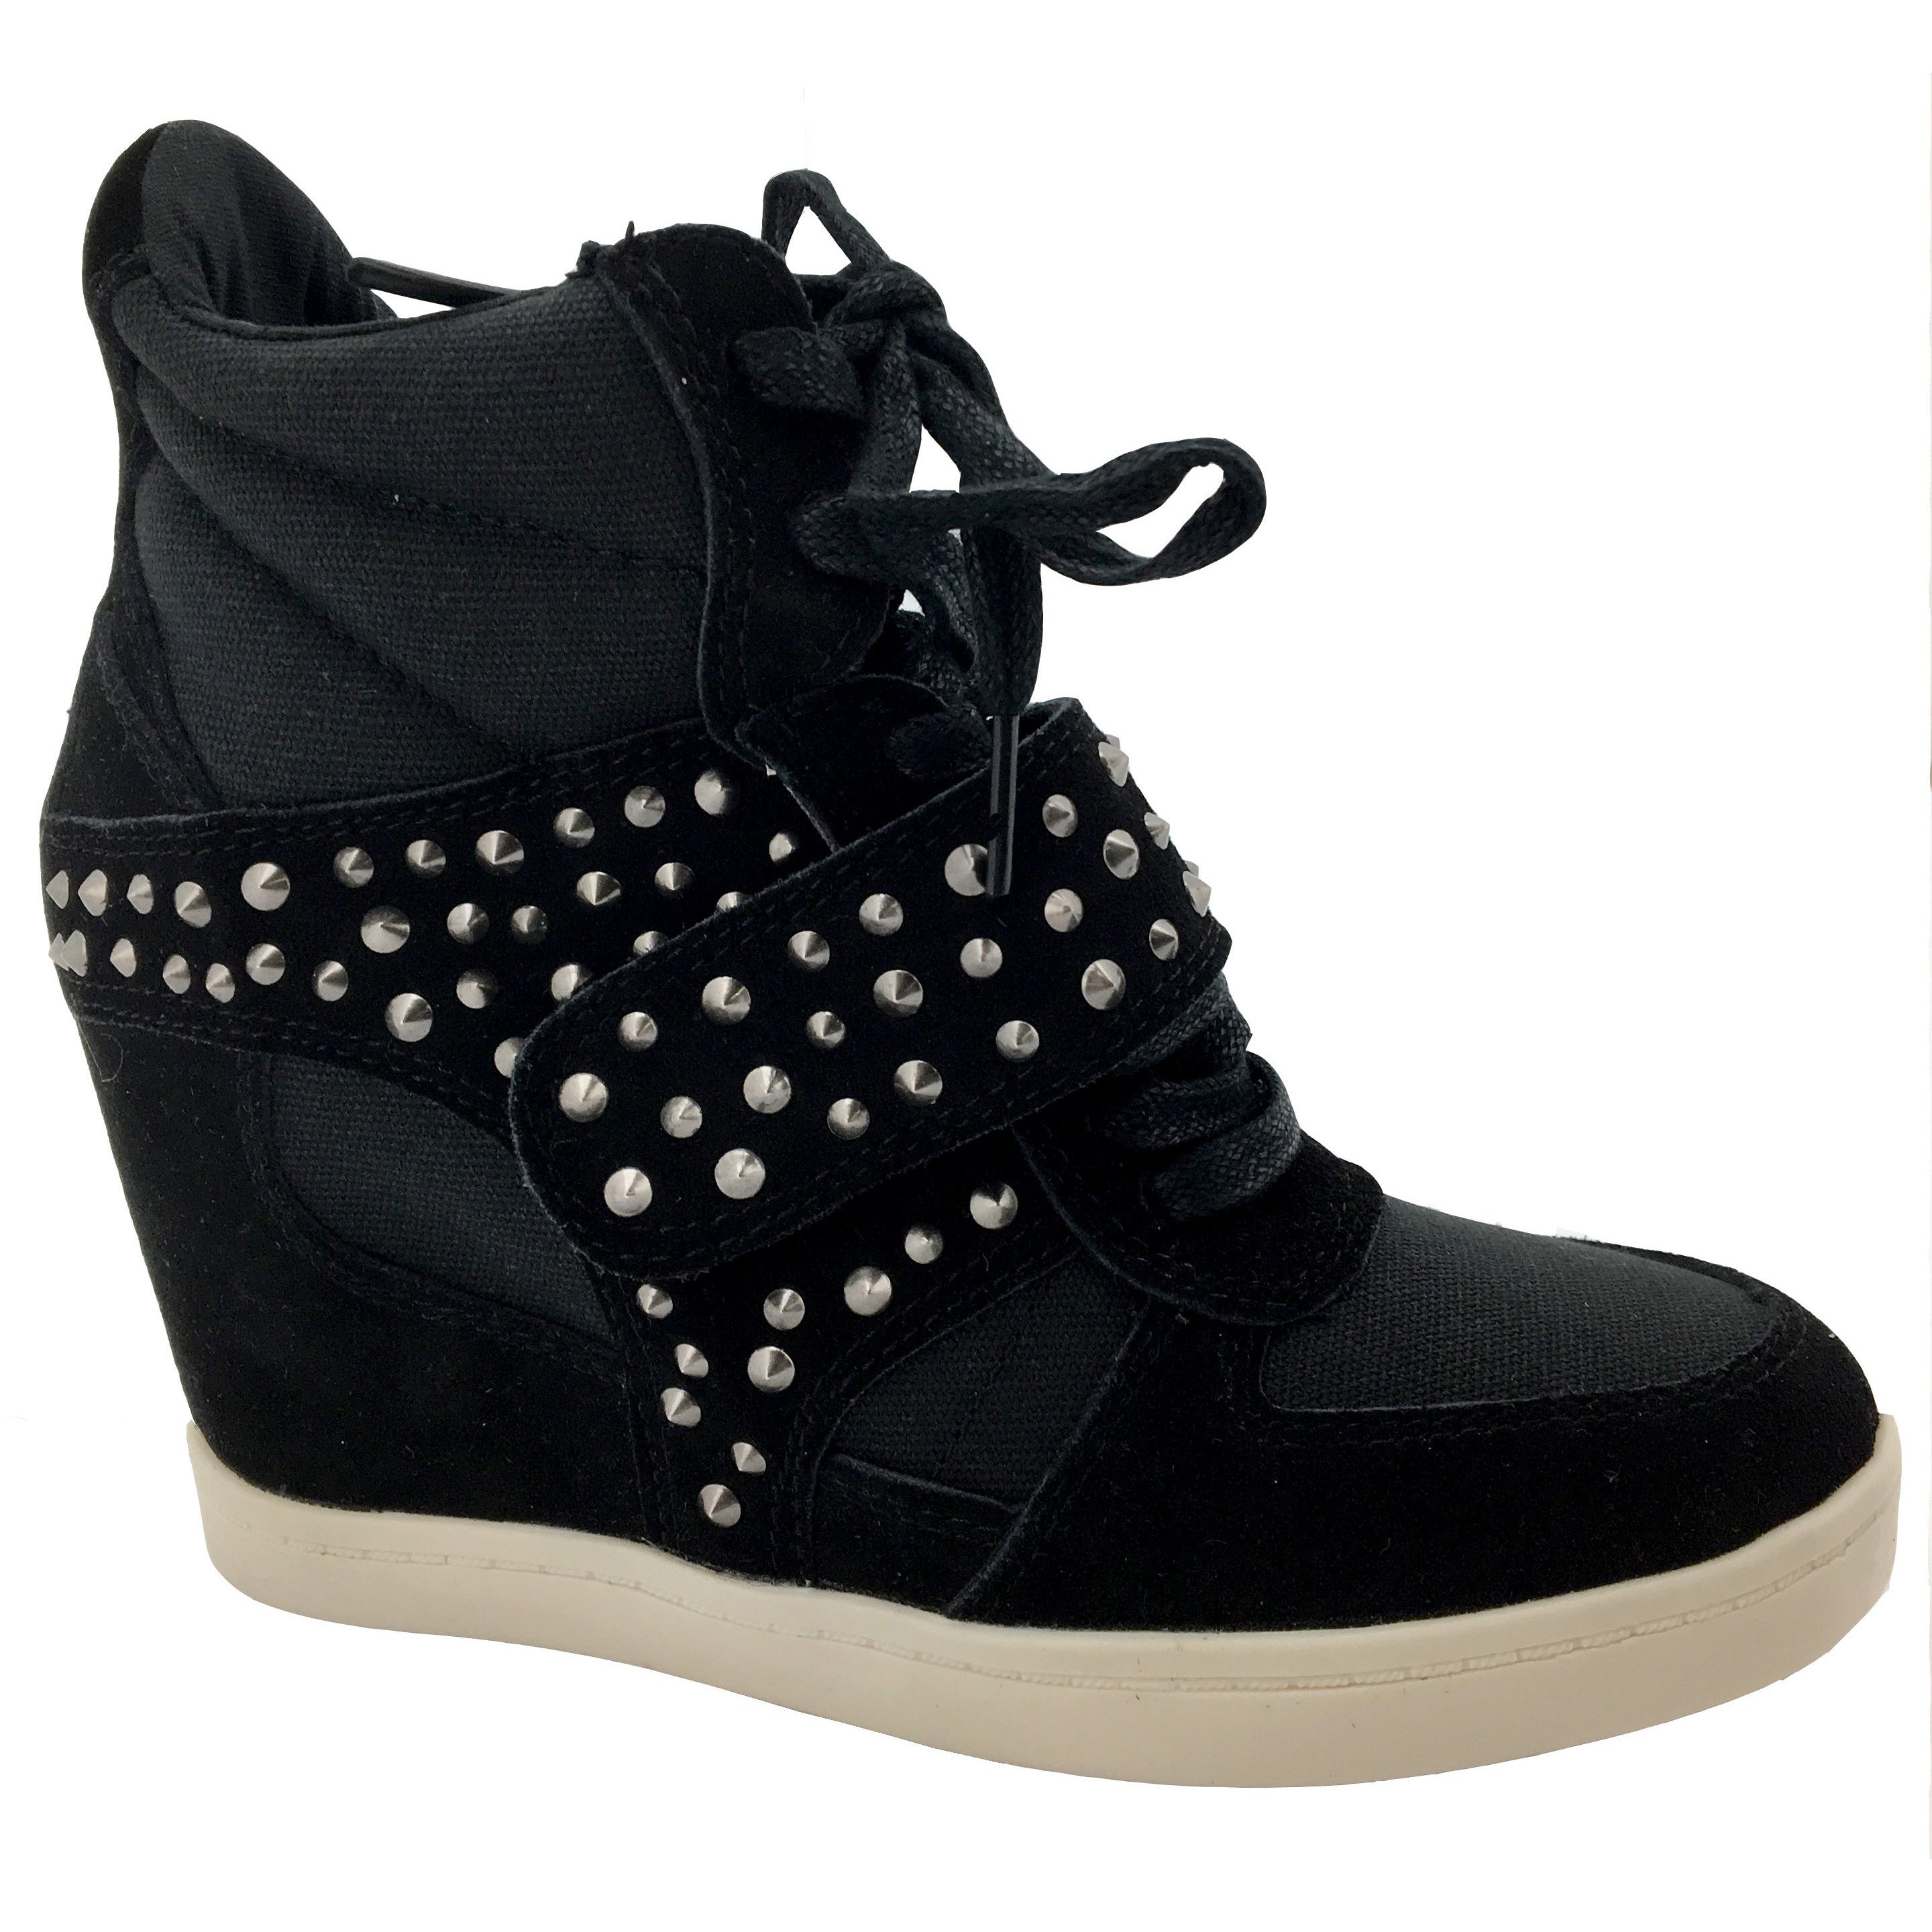 Zigi Soho Women's Studded Wedge Heeled Shoe / Black / Fashion Sneaker / Various Sizes